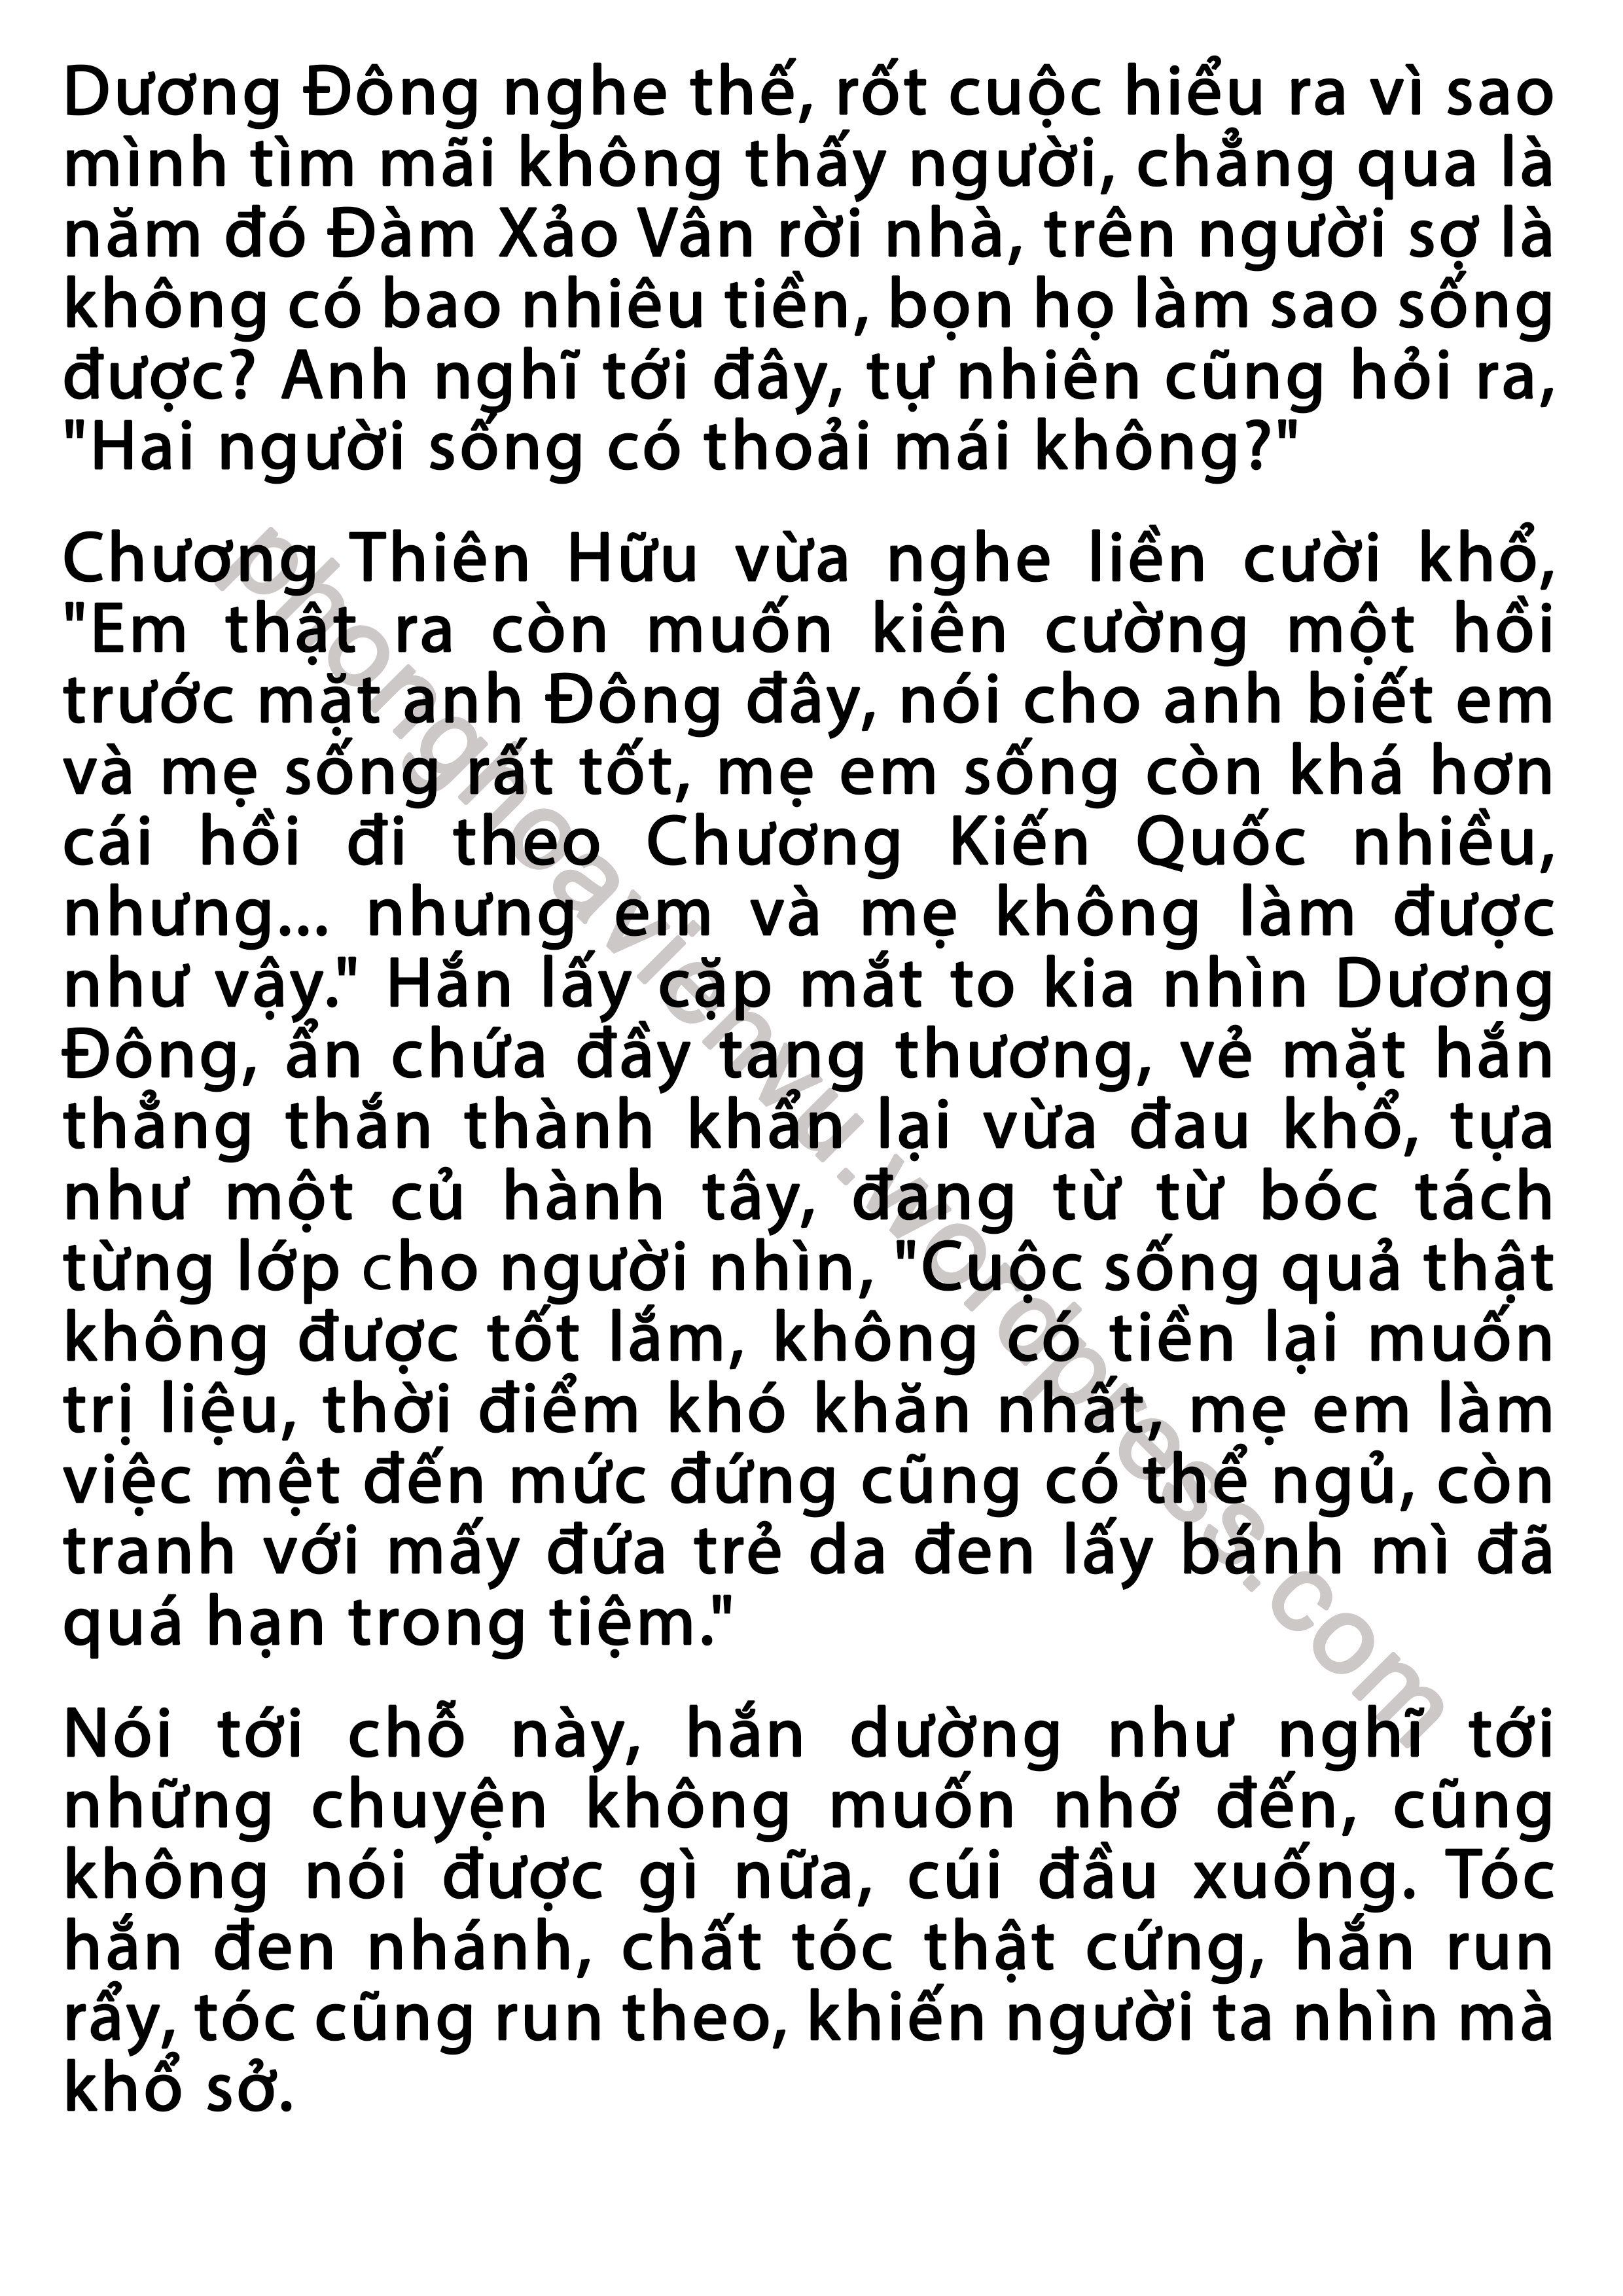 phung-xuan-43-pic10